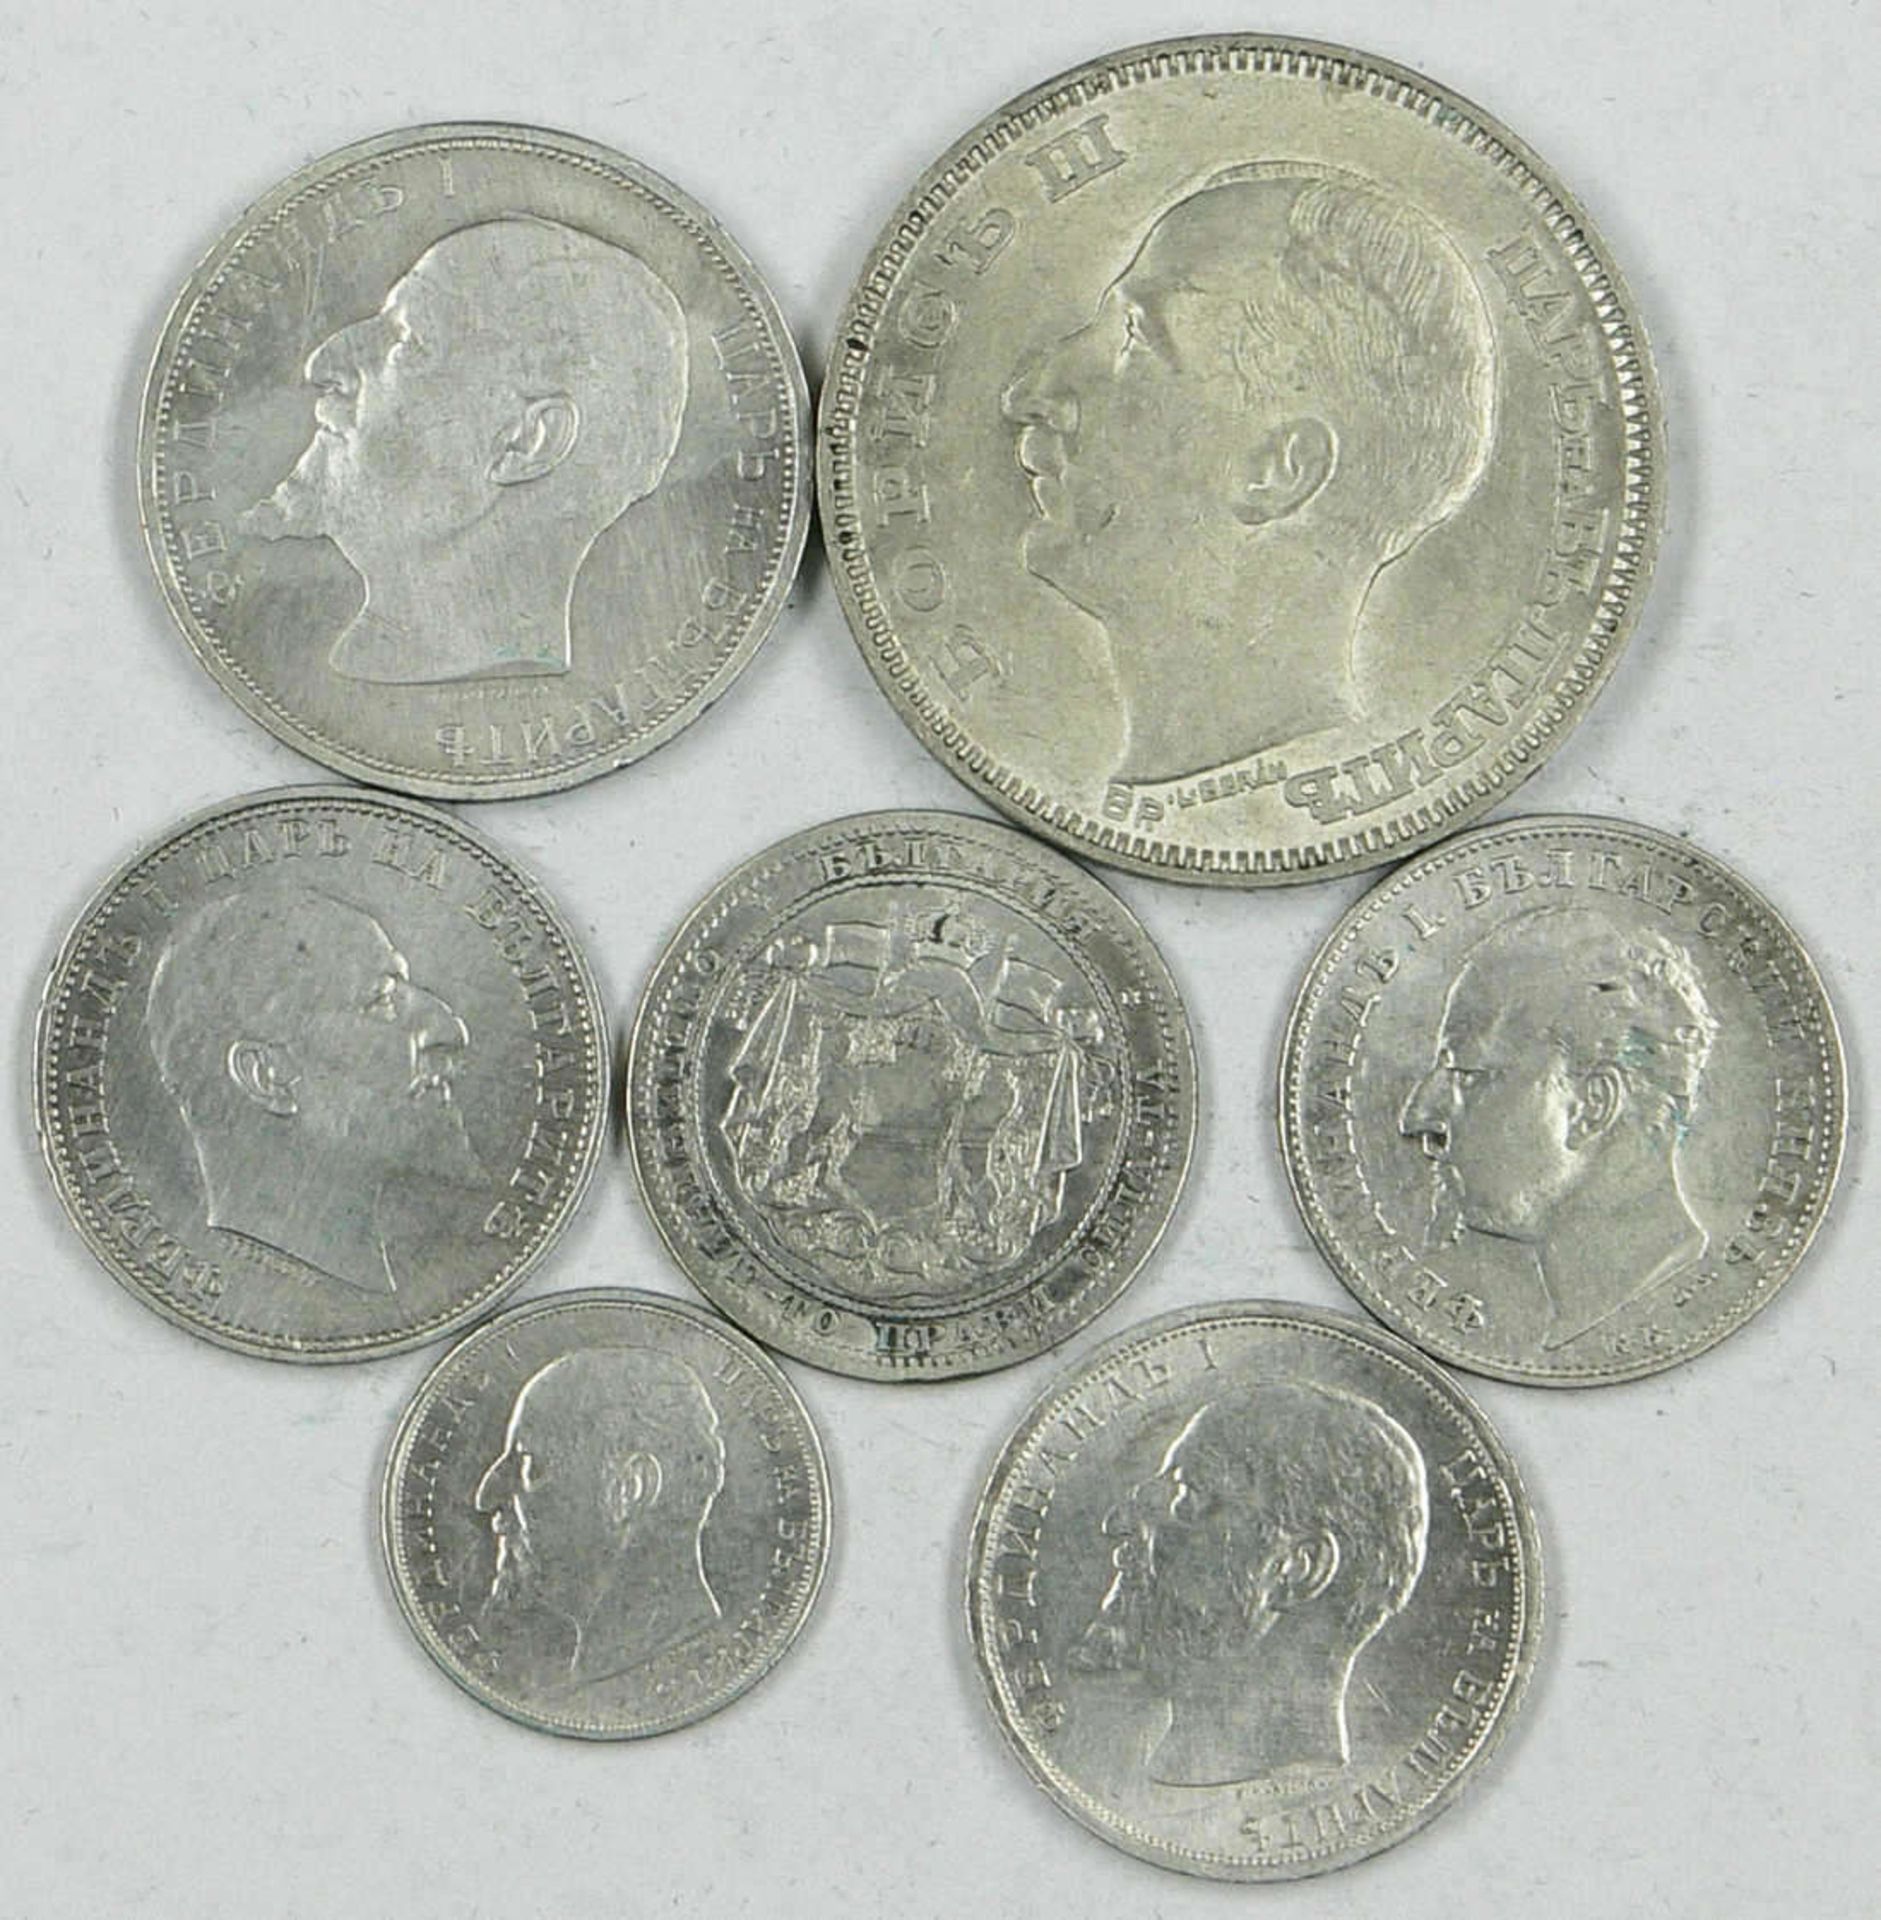 Lot Silbermünzen Bulgarien dabei 1 x 50 Stoniki 1913, 4 x 1 Lewa Stück, 1 x 2 Lewa 1912 sowie 1 x